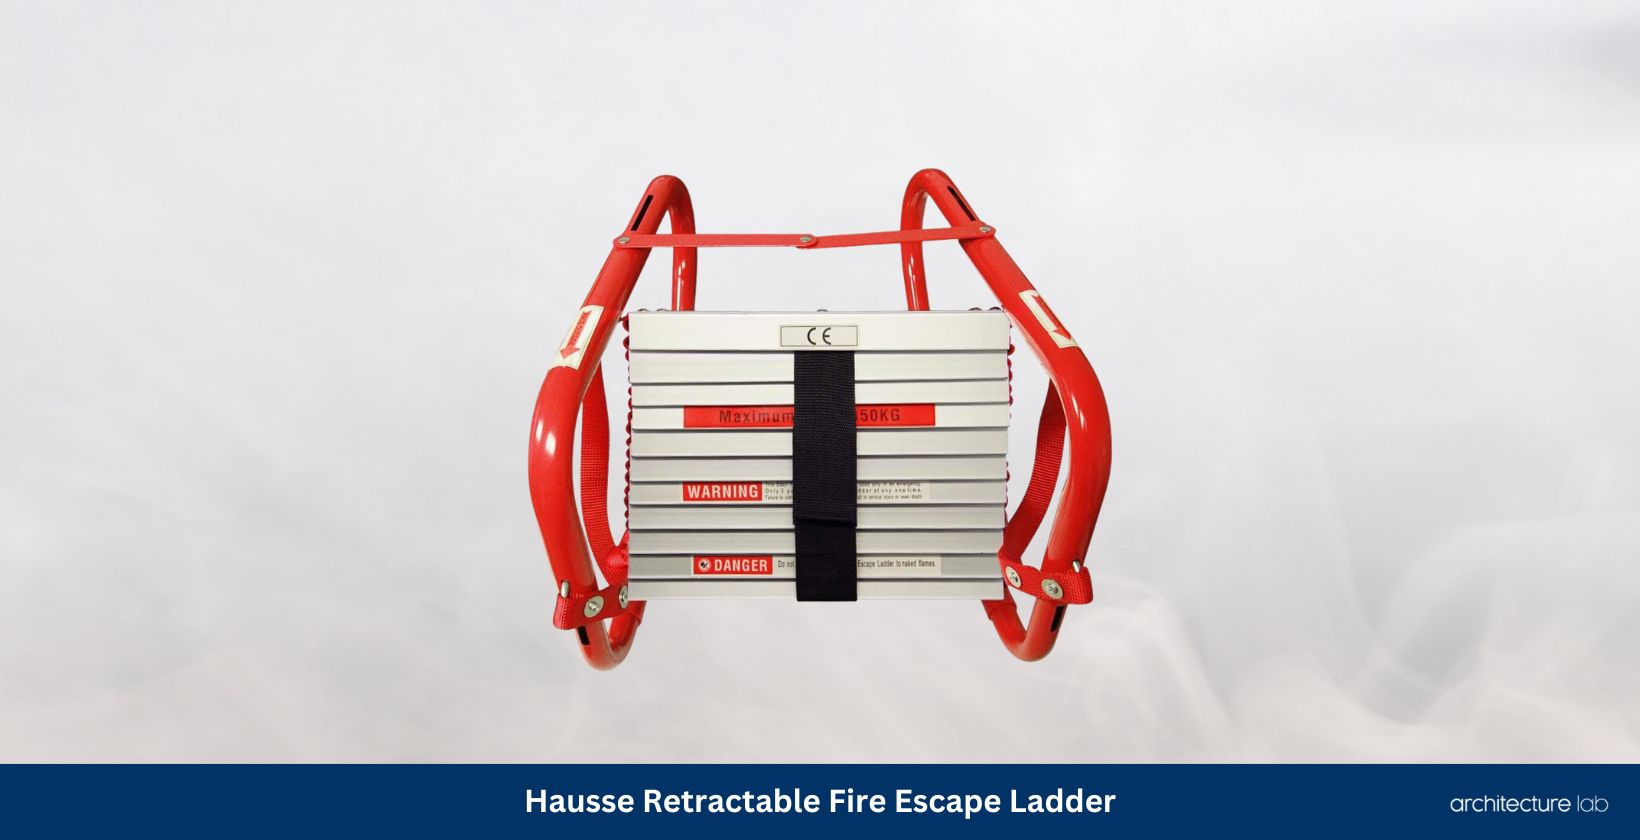 Hausse retractable fire escape ladder 3 storey 25